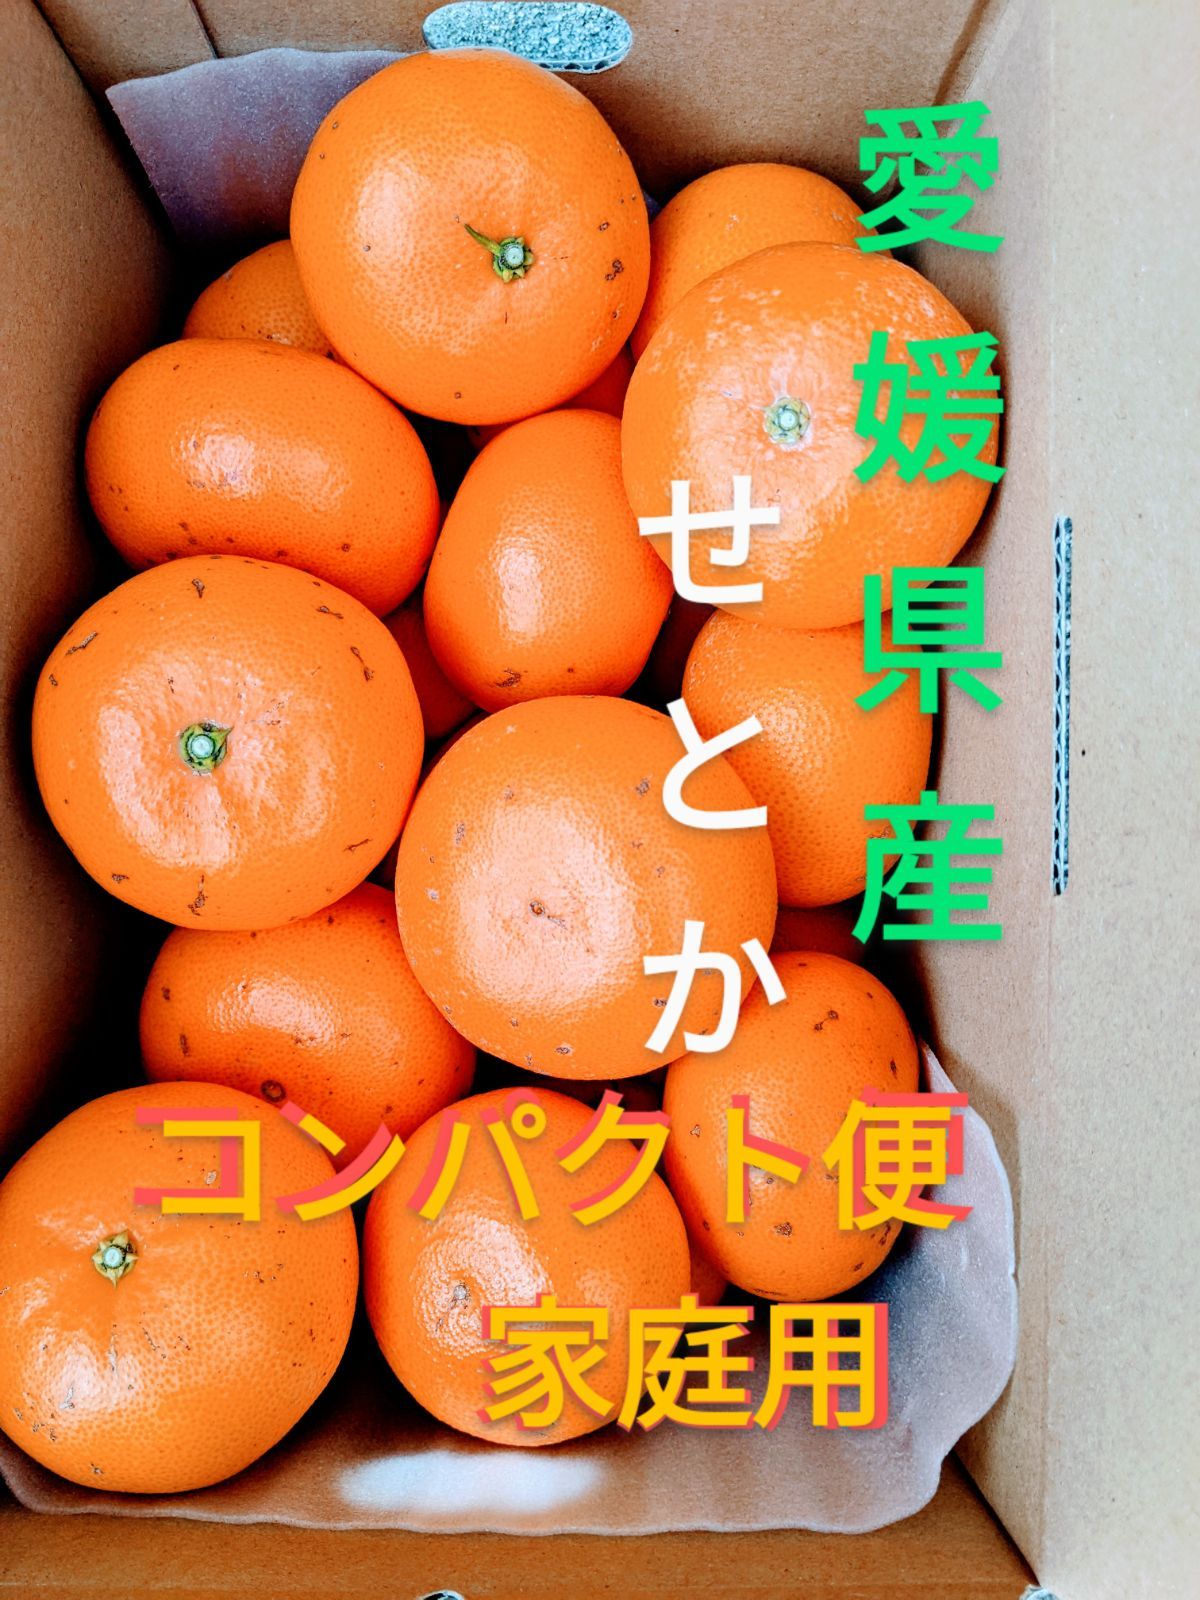 超特価SALE開催 愛媛県産 ハウスみかん コンパクト便 柑橘 ミカン